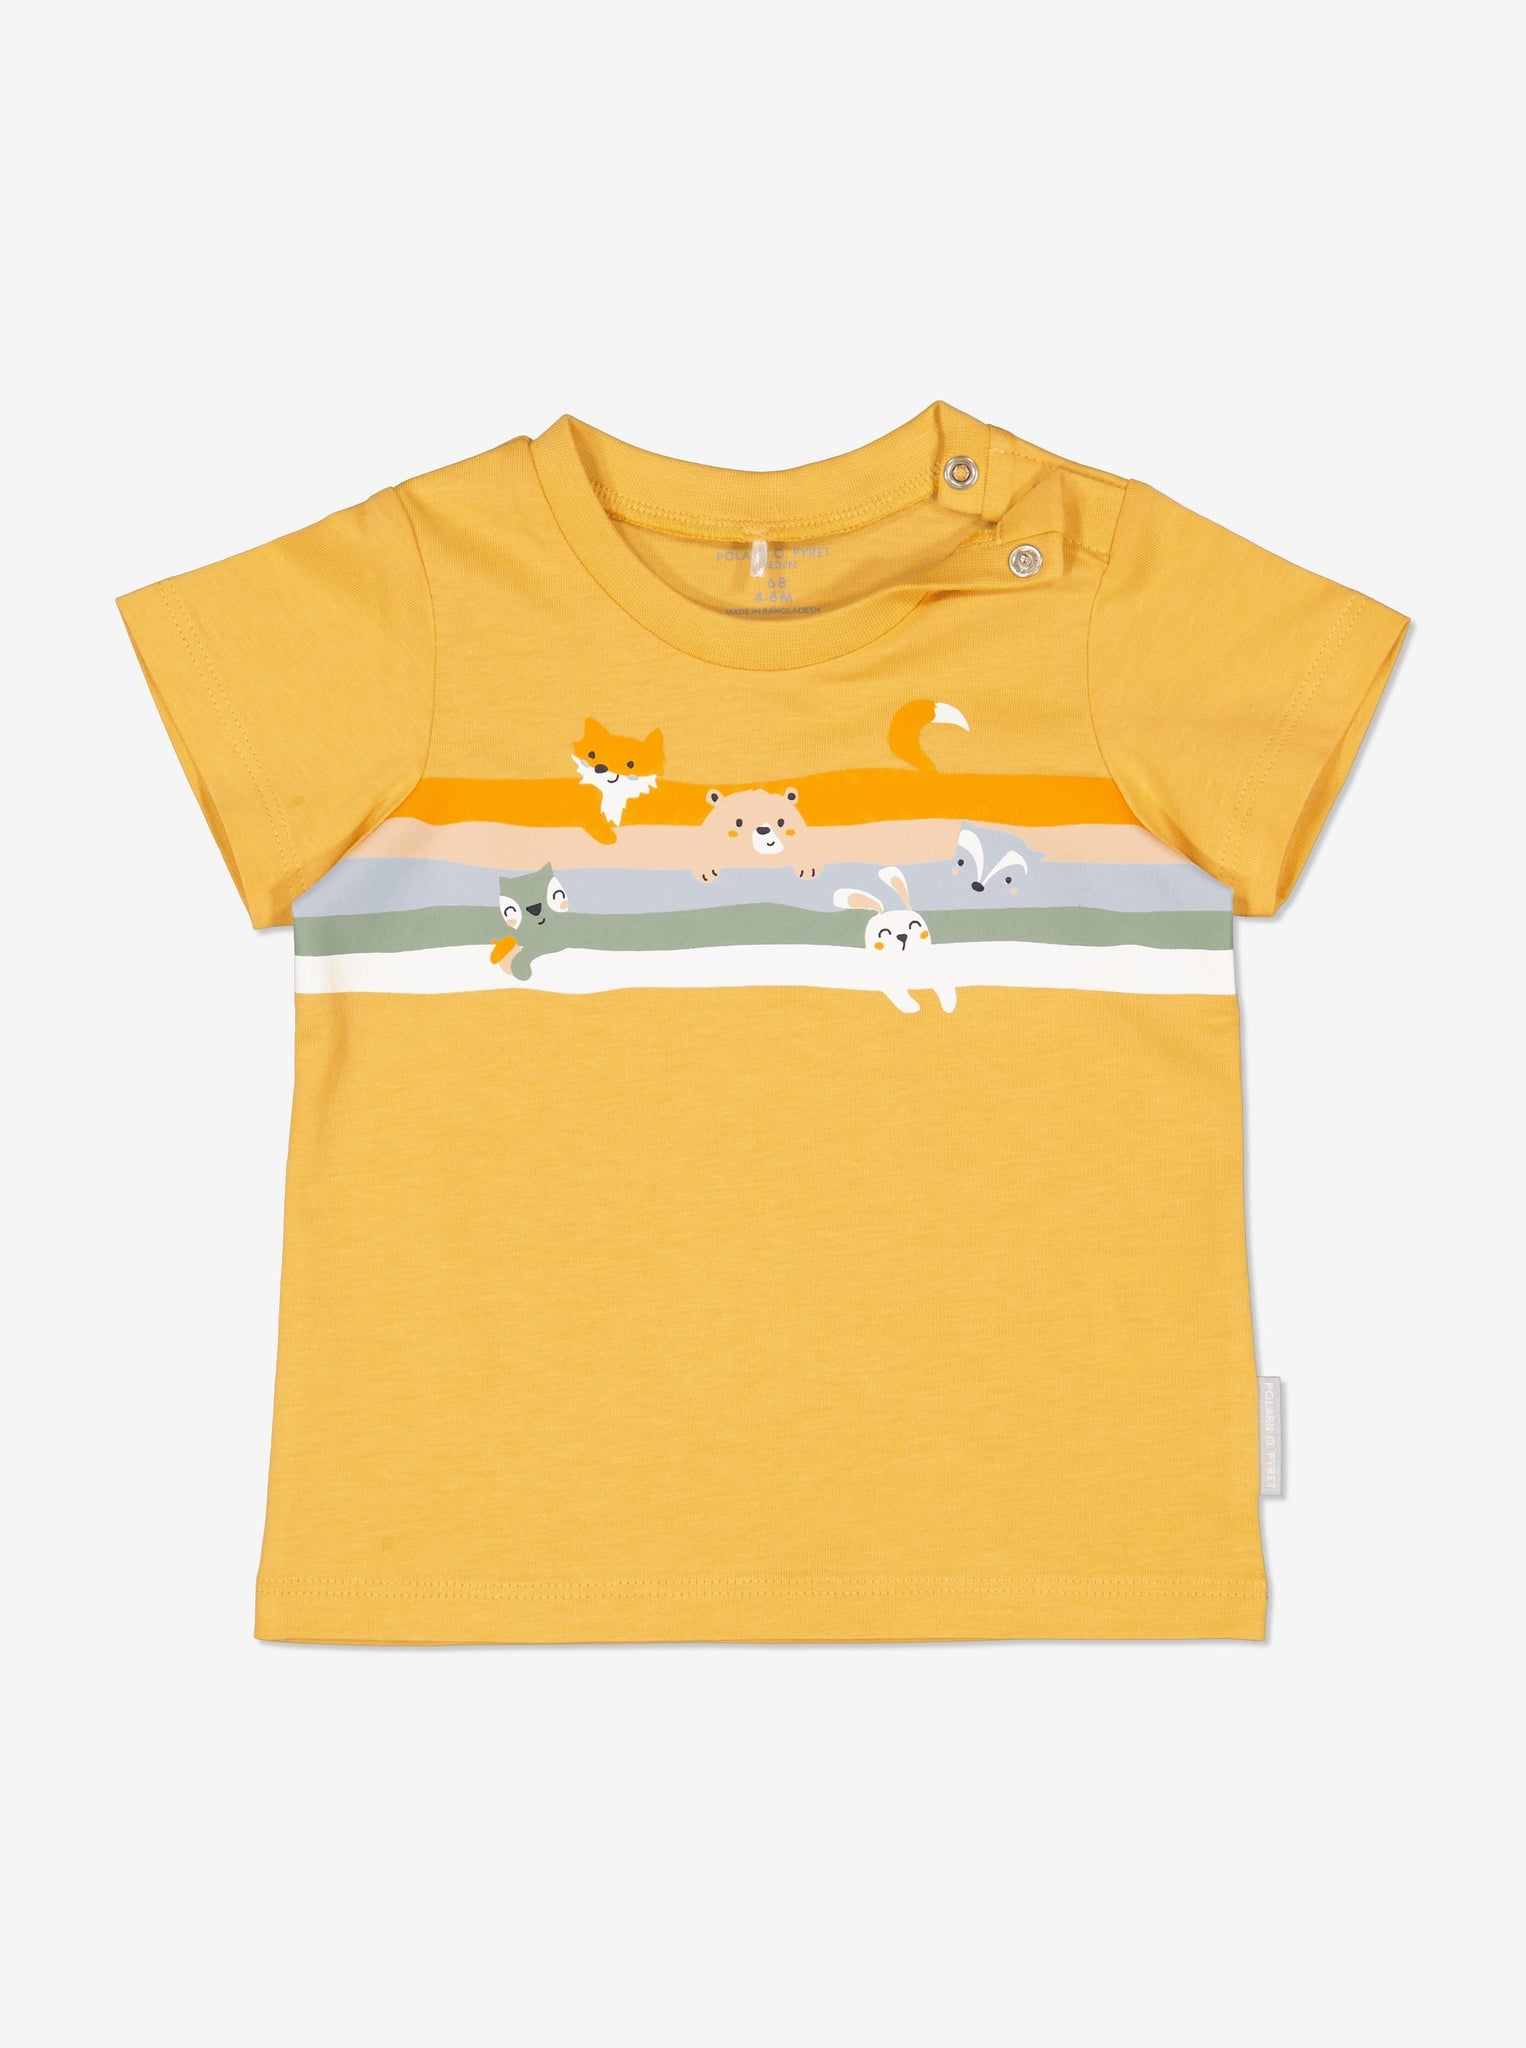 Organic Cotton Yellow Baby T-Shirt